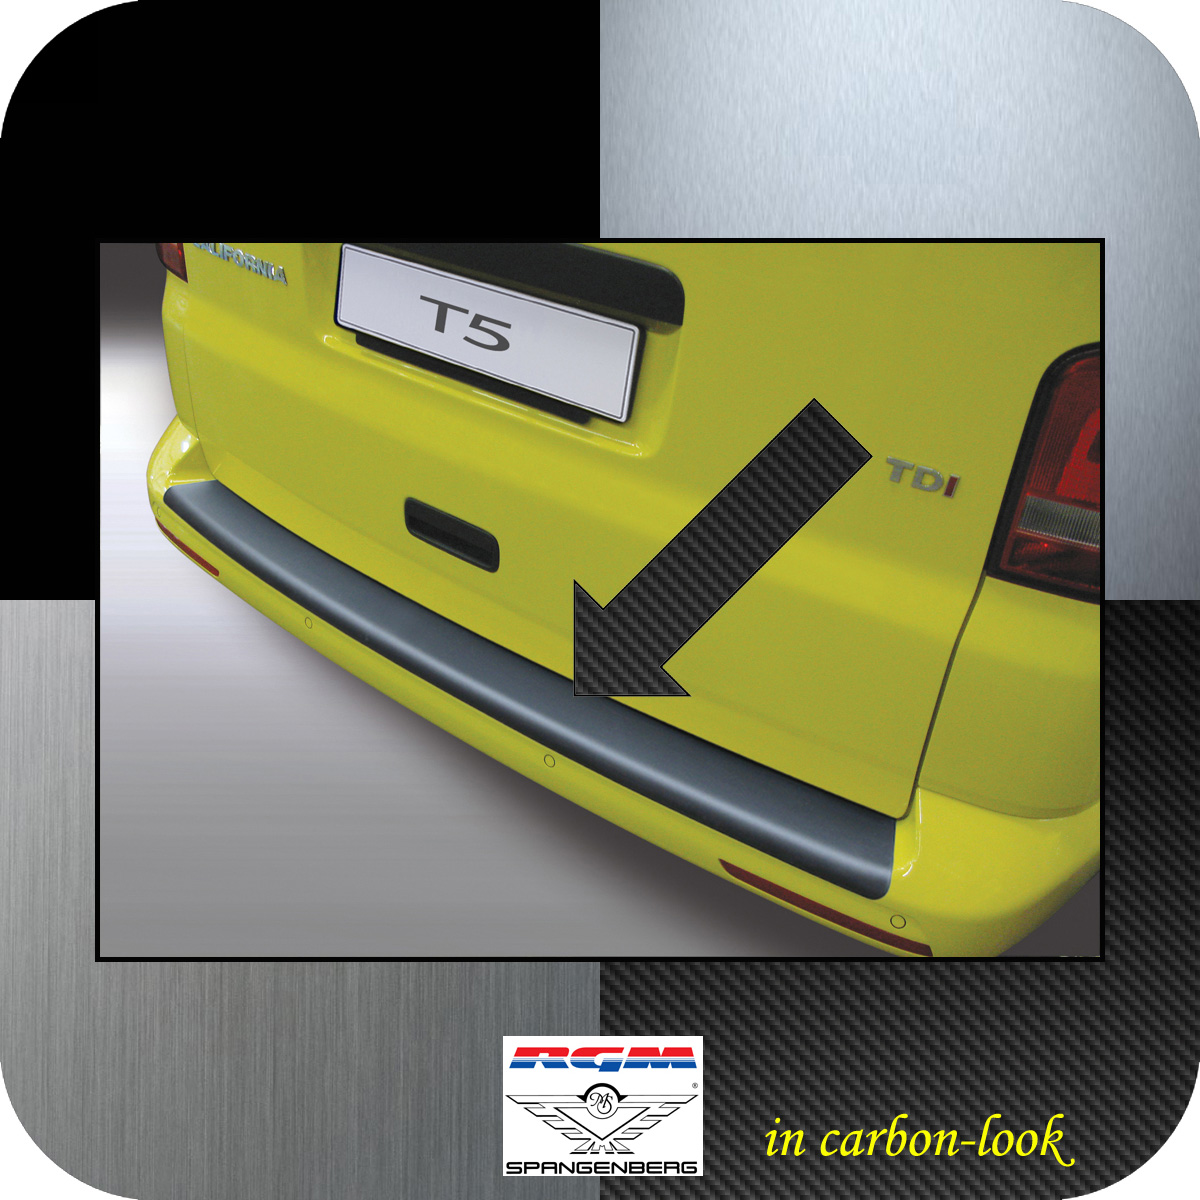 Ladekantenschutz Carbon-Look VW T5 Lackstoßstange 2012-15 Version glatt 3509576